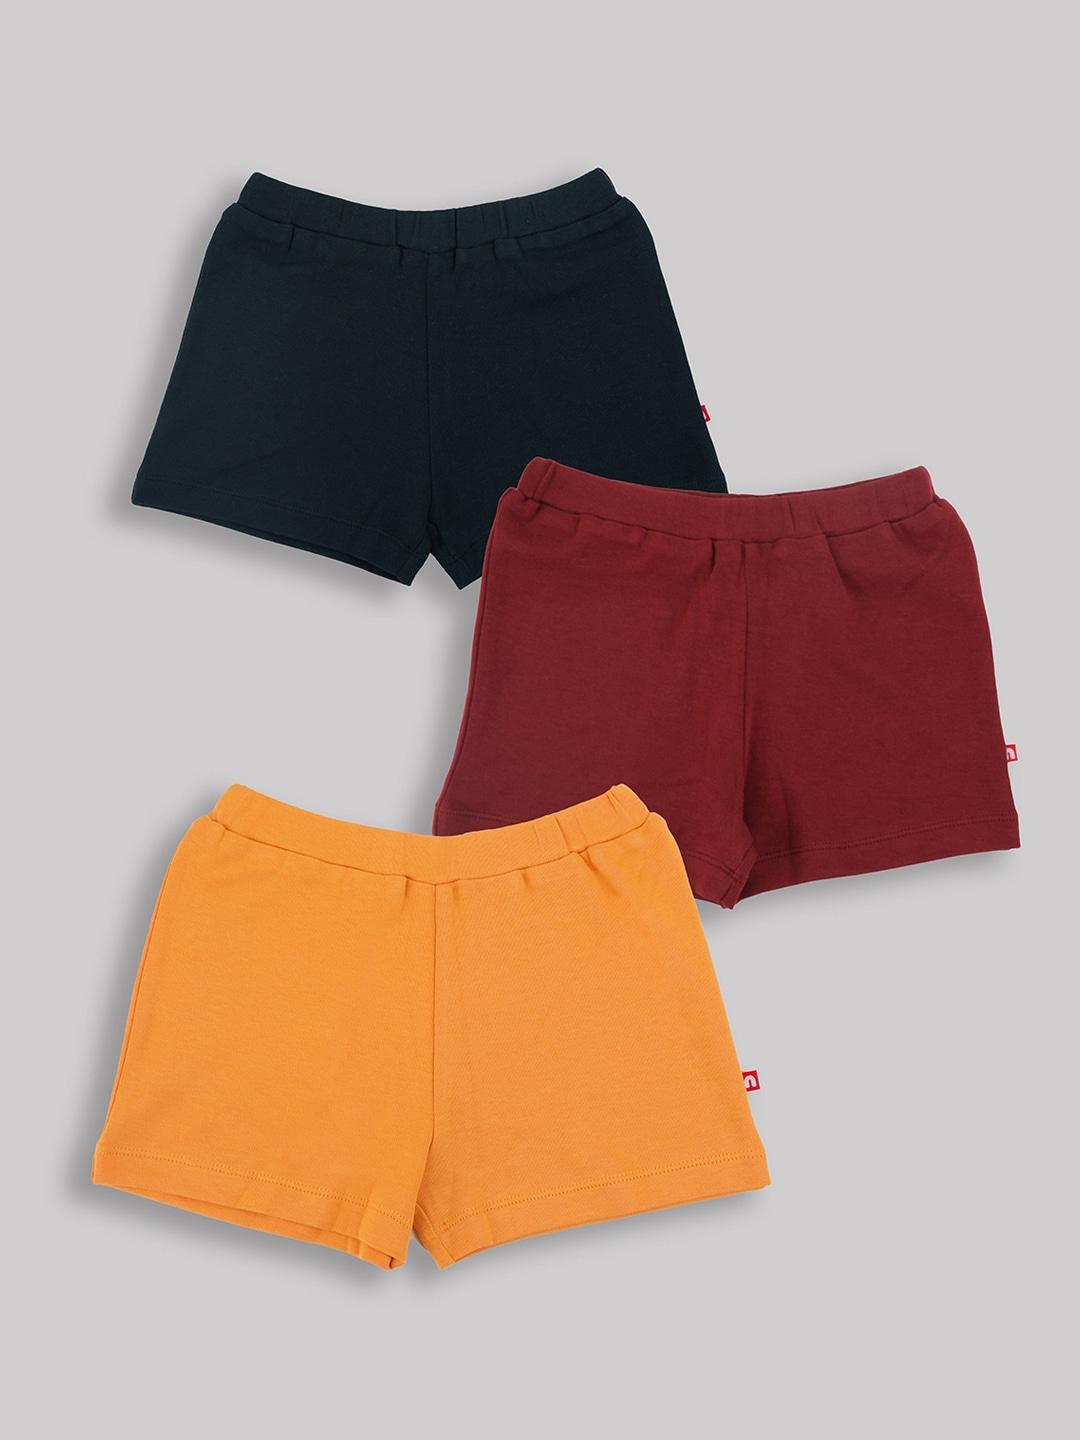 nino-bambino-boys-multipack-of-3-hot-pants-shorts